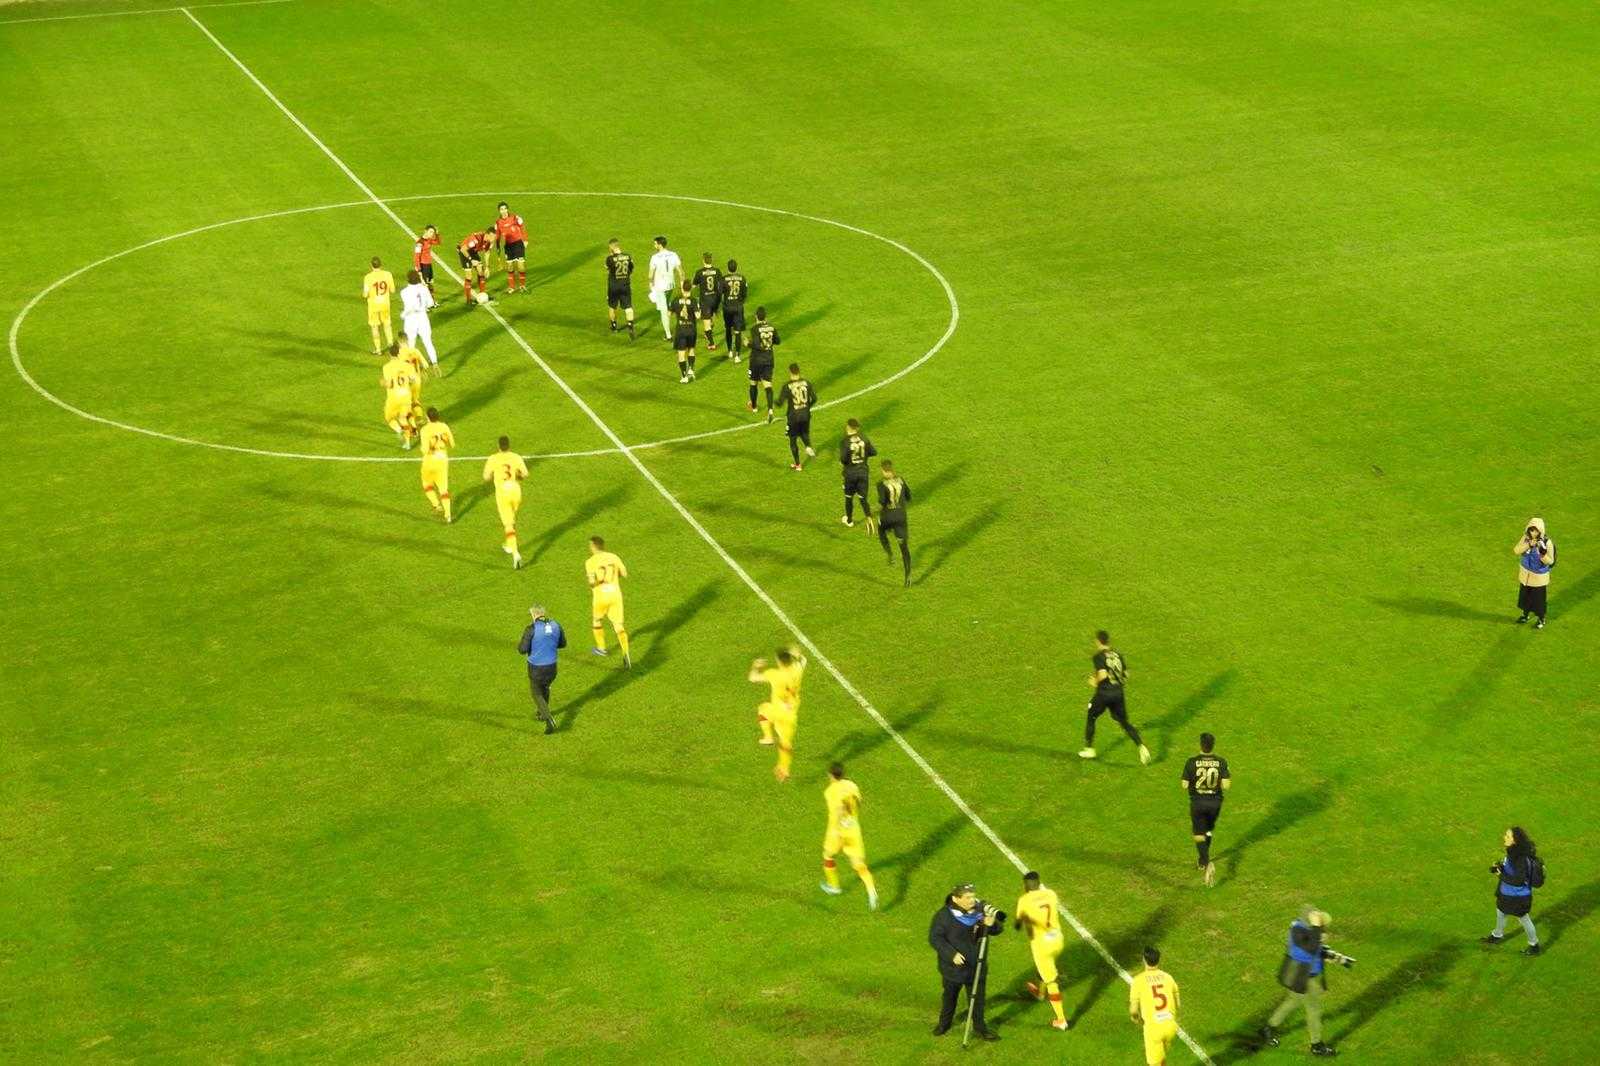 Calcio. Catanzaro-Monopoli 1-2, giallorossi sorpassati nel finale (con highlights)